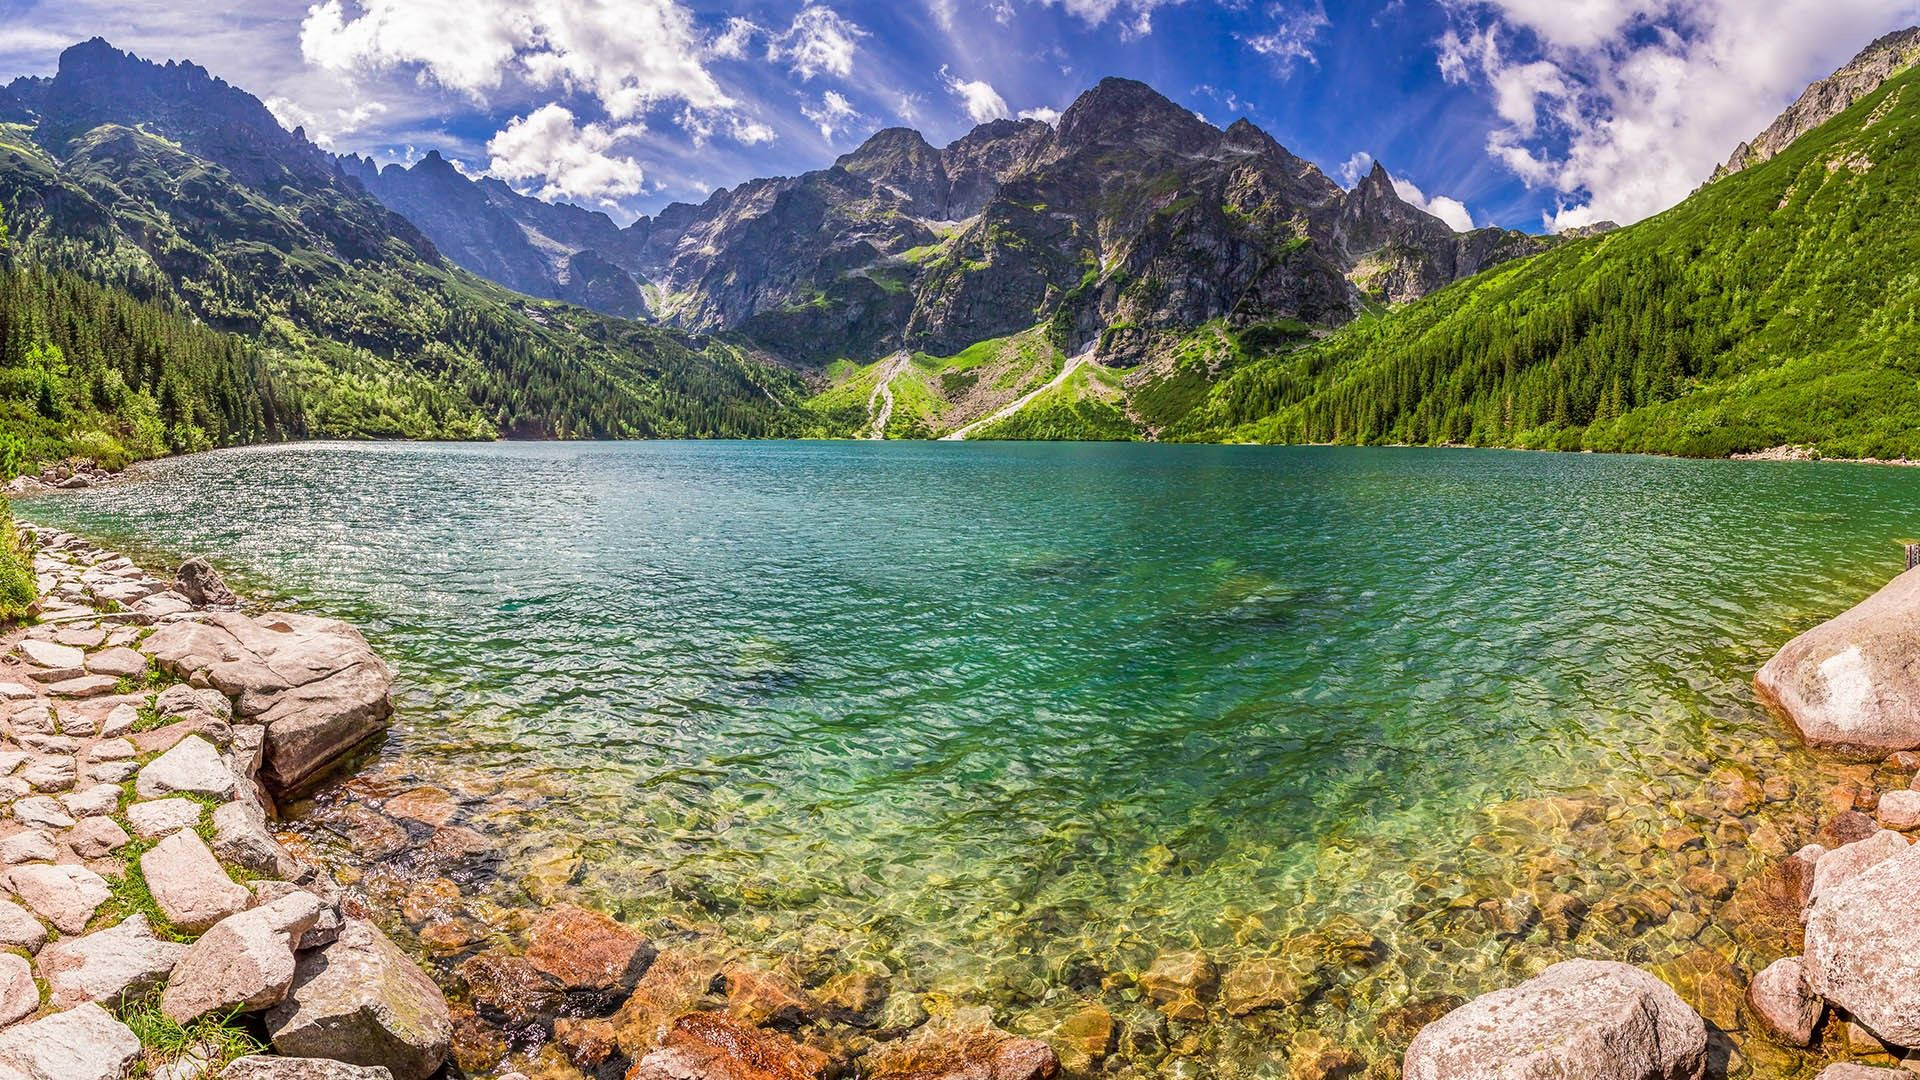 Poland's Morskie Oko Green Lake